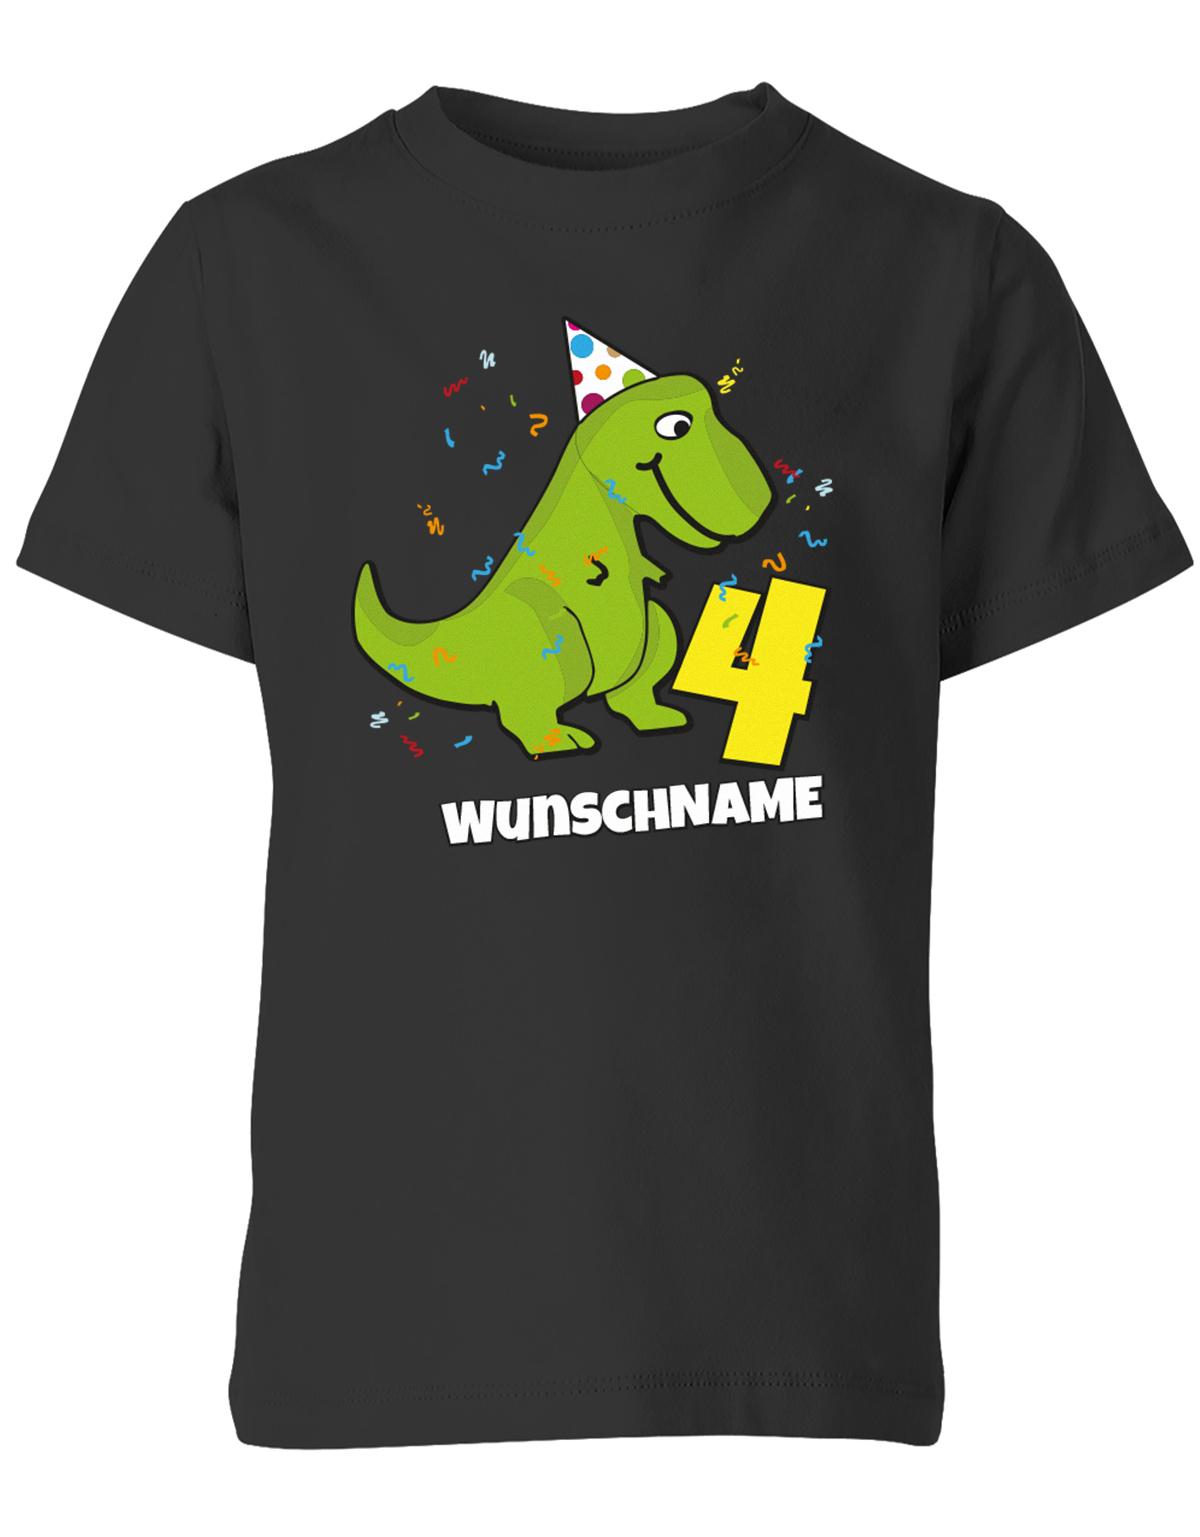 ich-bin-4-Dinosaurier-t-rex-wunschname-geburtstag-kinder-shirt-schwarz